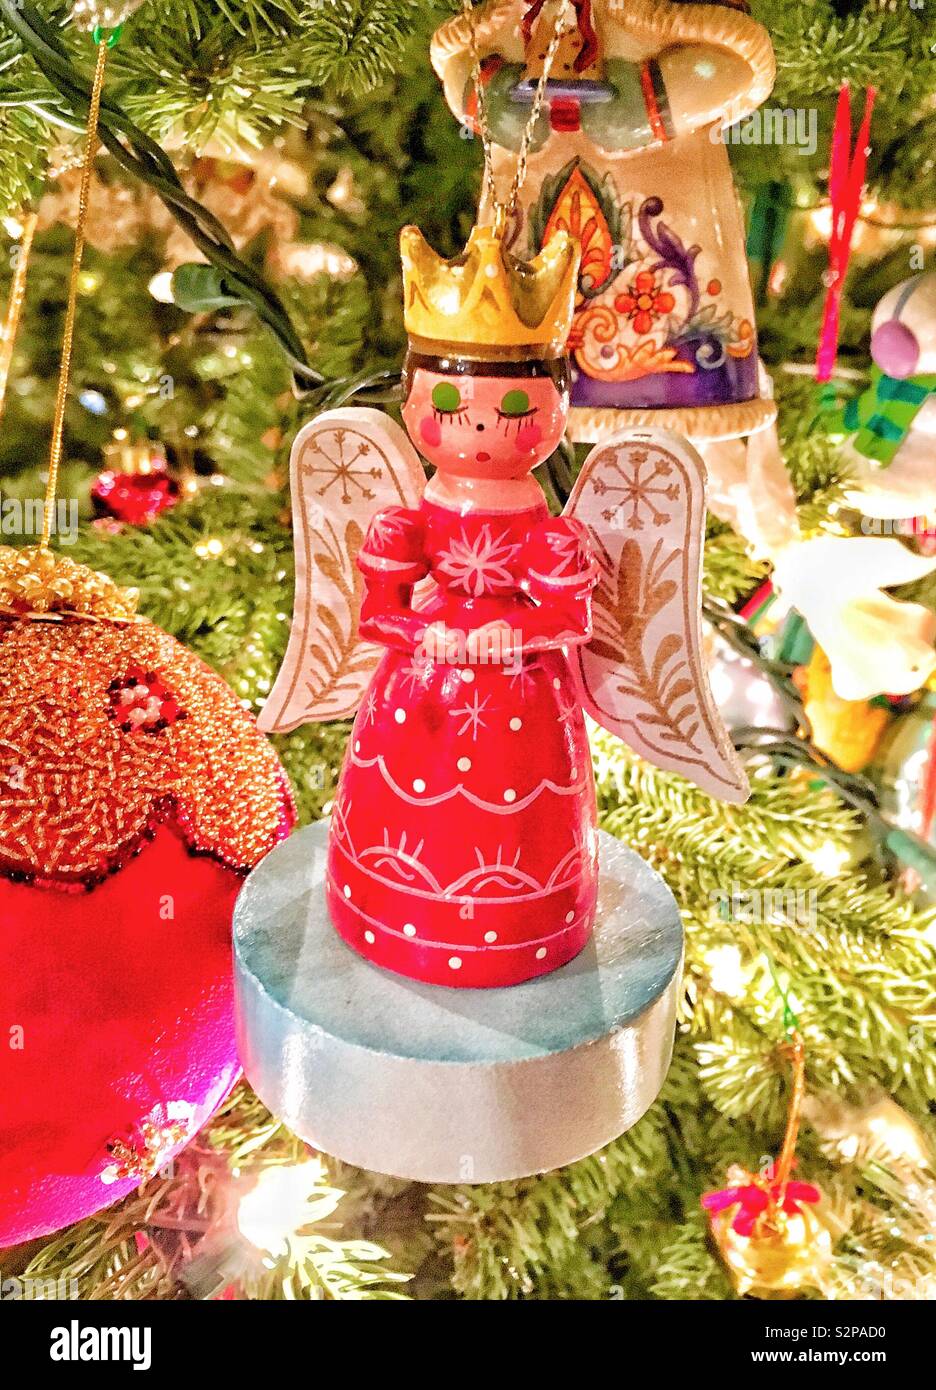 Ángel de madera adorno en el vestido rojo vestidos de gold crown orando en Navidad árbol rodeado por otros ornamentos y agujas de pino Foto de stock